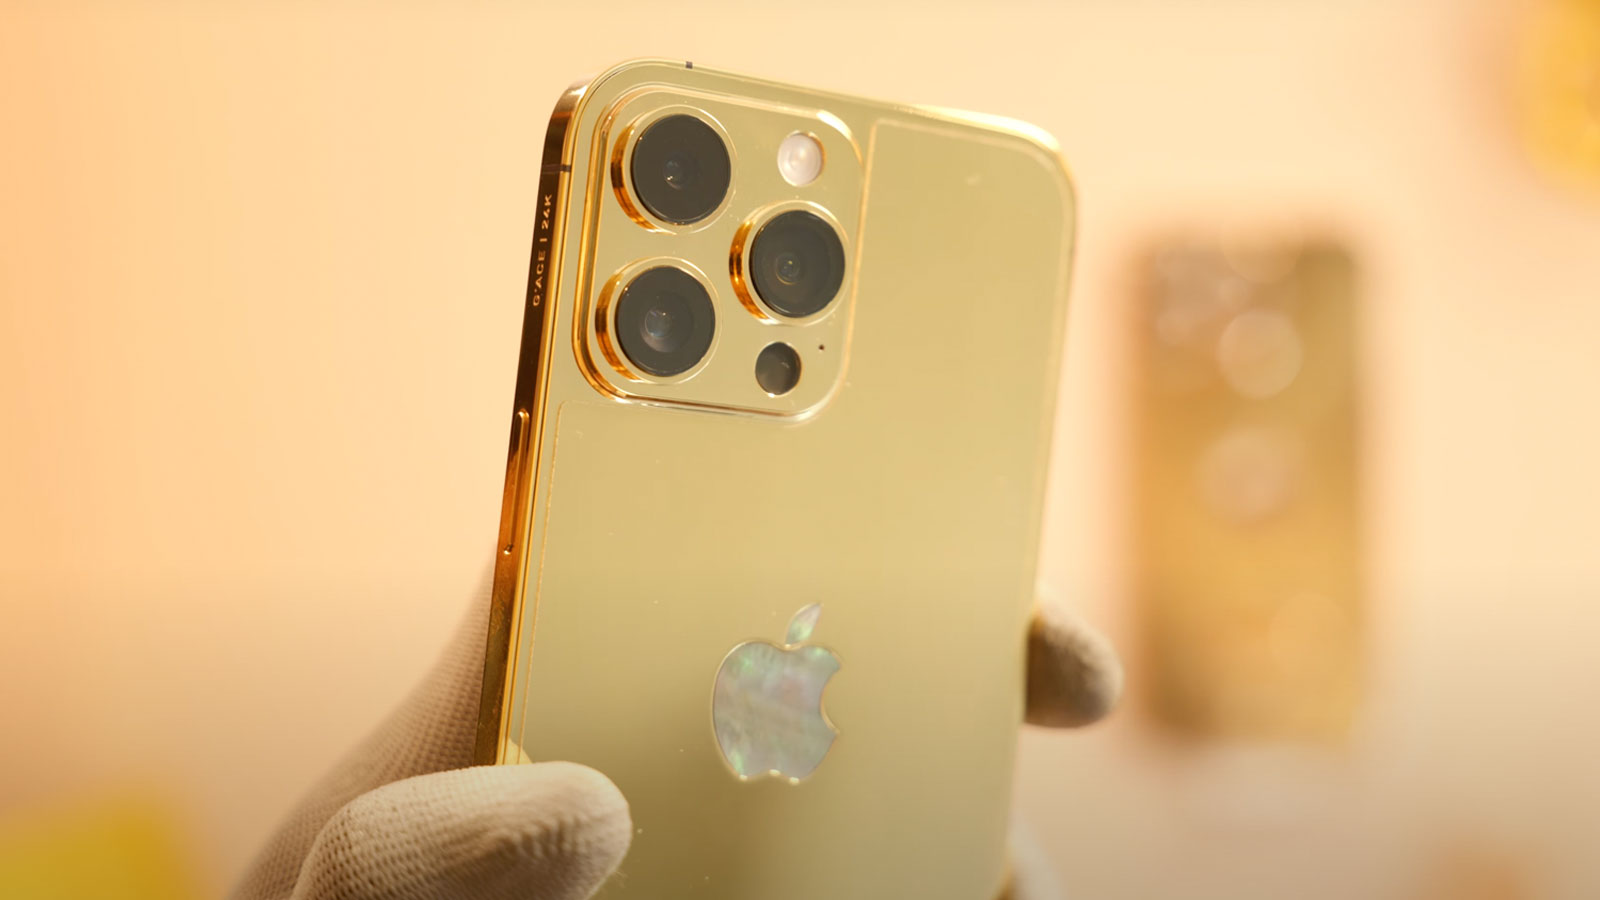 iPhone 14 Pro Max mạ vàng kim cương: Với phiên bản iPhone 14 Pro Max mạ vàng kim cương, người dùng sẽ được trải nghiệm thiết kế cực kỳ độc đáo và sang trọng. Với màu vàng kim cương phủ lên mặt lưng thiết bị, iPhone 14 Pro Max mạ vàng kim cương giúp cho các bạn thể hiện được gu thẩm mỹ cao cùng sự sang trọng và đẳng cấp.